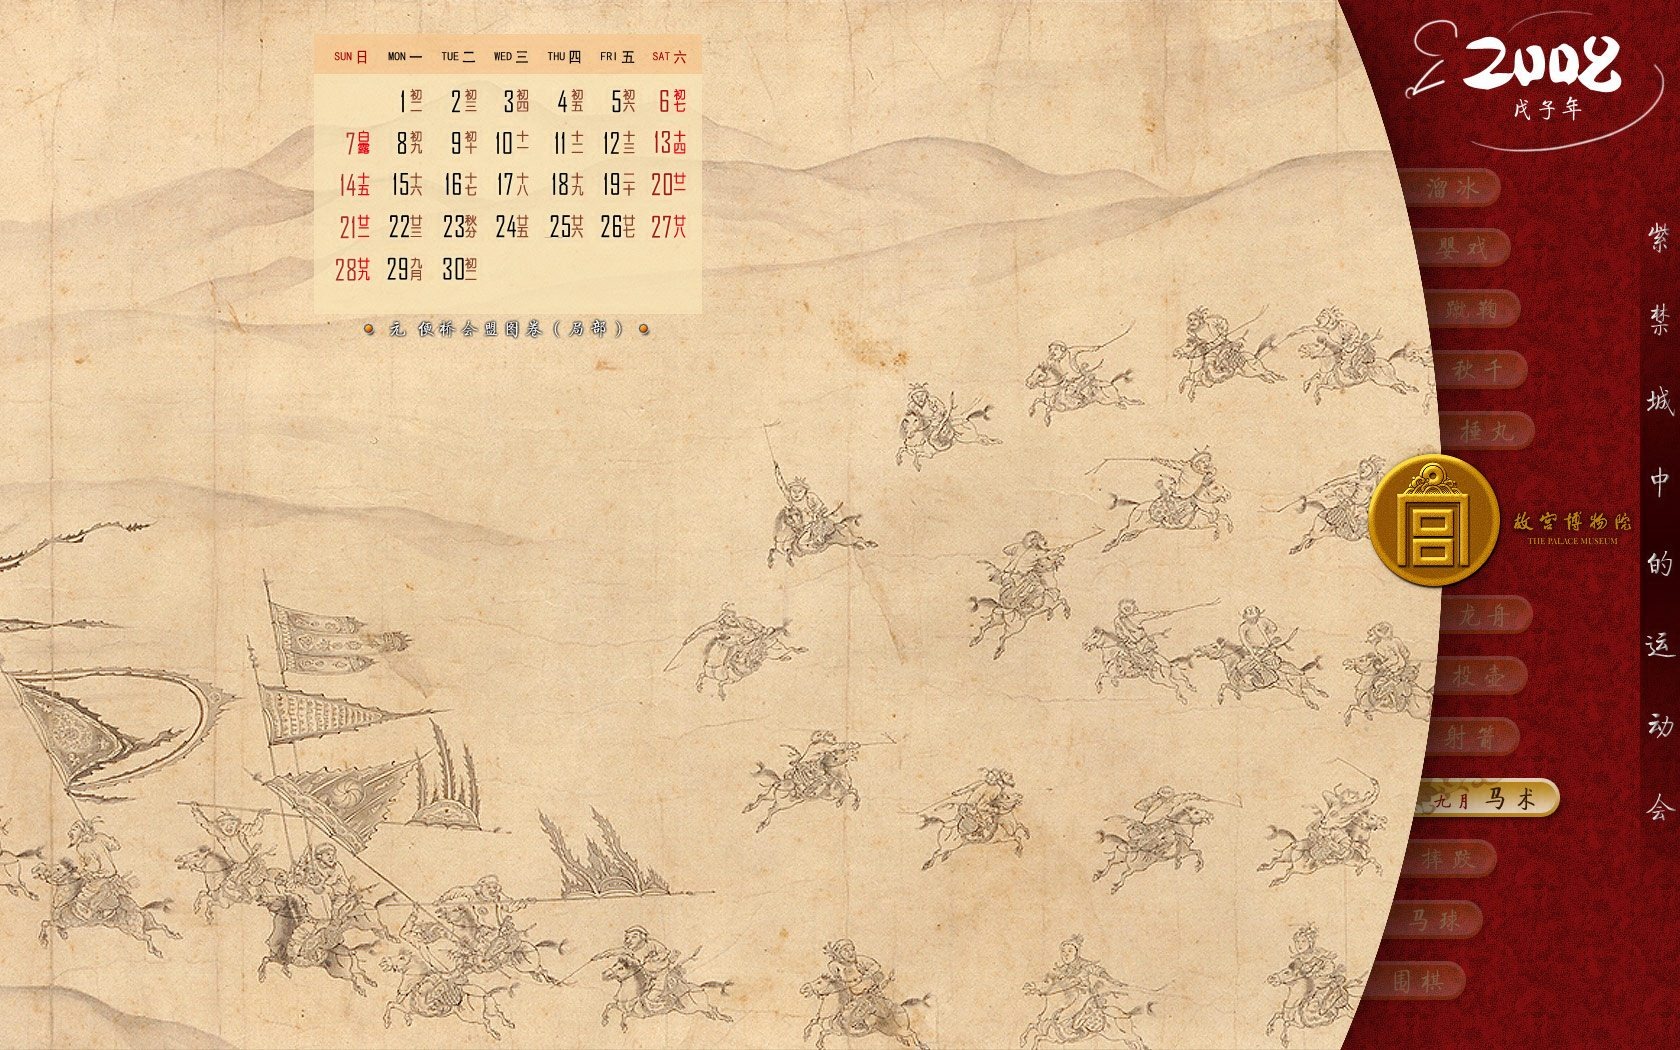 北京故宫博物院 文物展壁纸(二)12 - 1680x1050